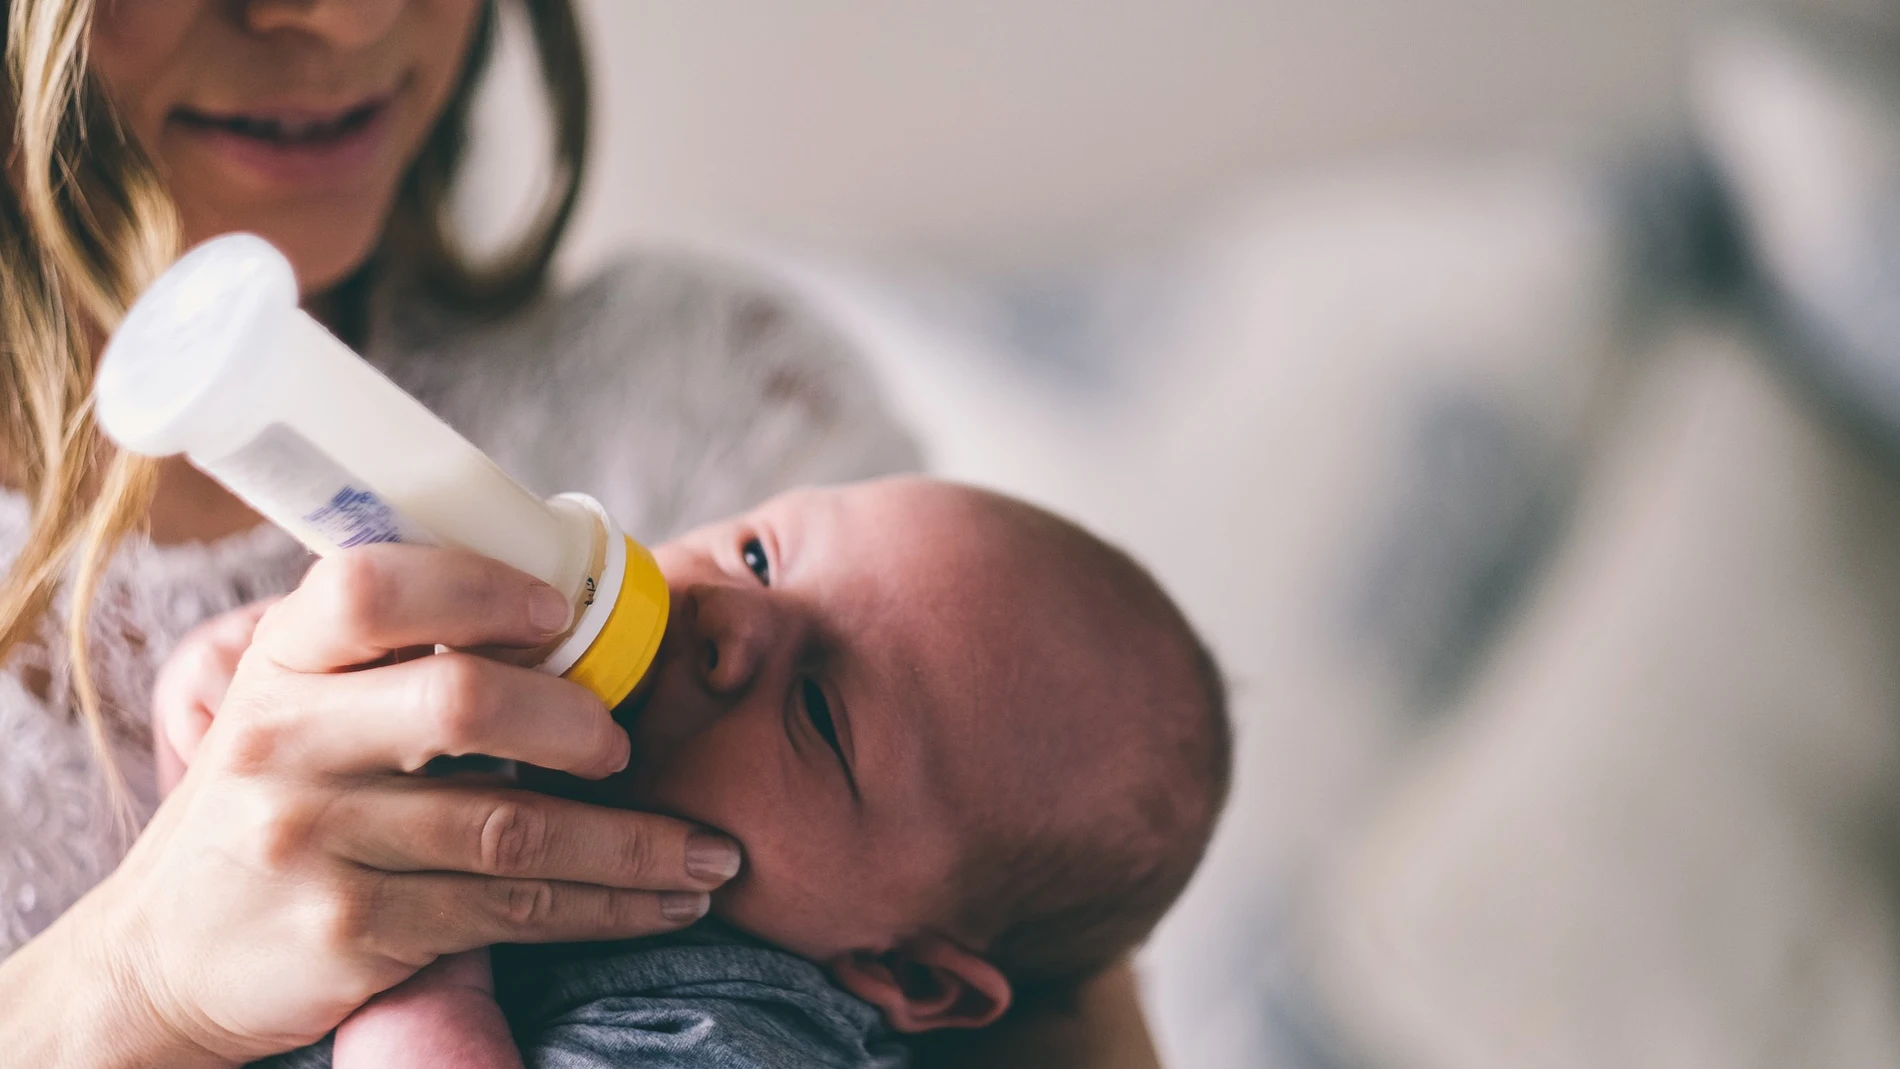 Científicos de Granada revelan que más del 80% de la leche materna tiene arsénico y mercurio, según un estudio